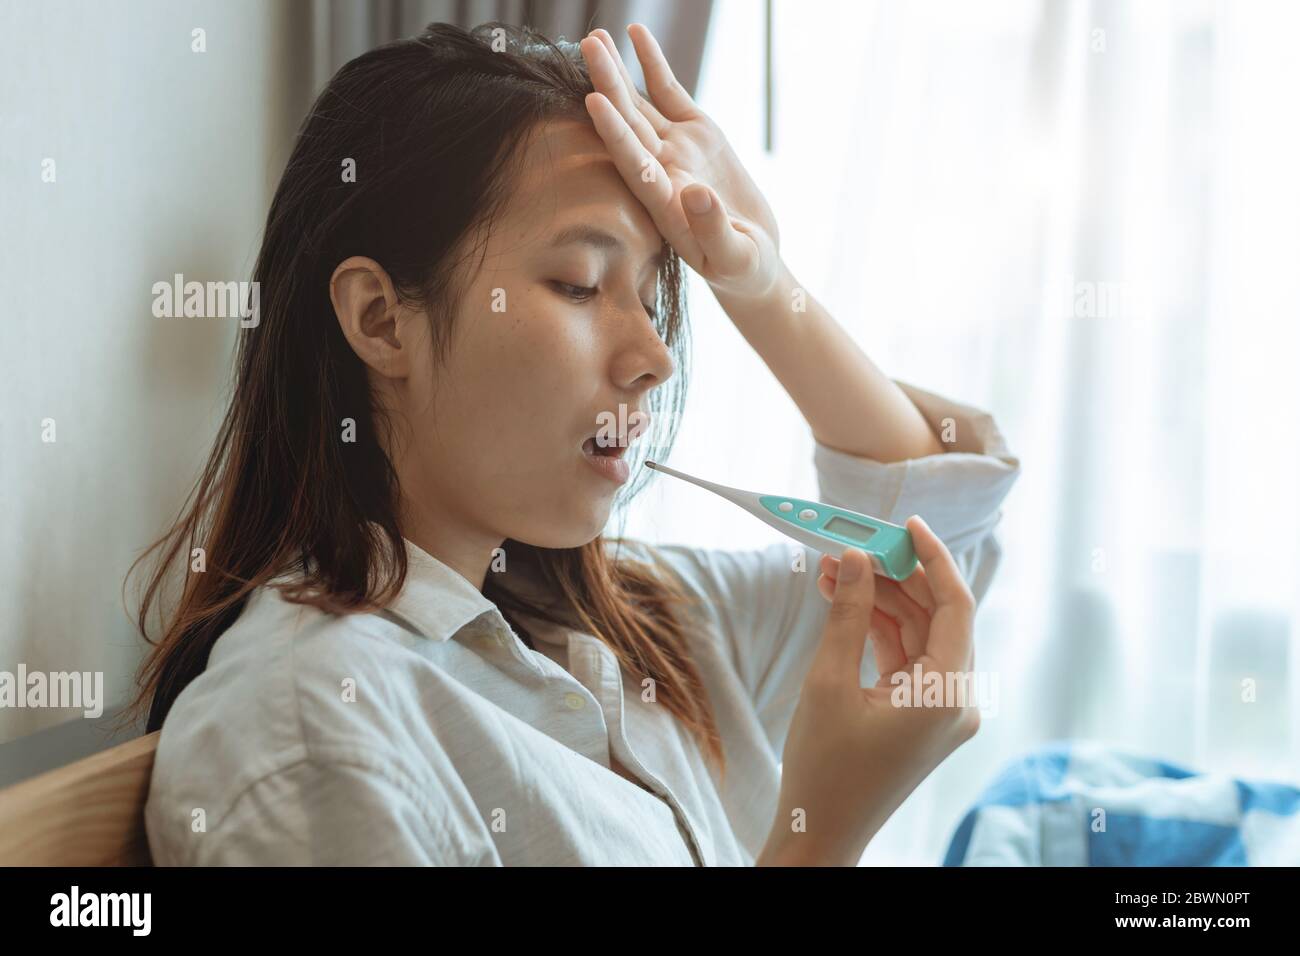 Les femmes asiatiques utilisant un thermomètre à test oral prennent la température corporelle pour diagnostiquer la grippe d'une infection à coronavirus. Banque D'Images